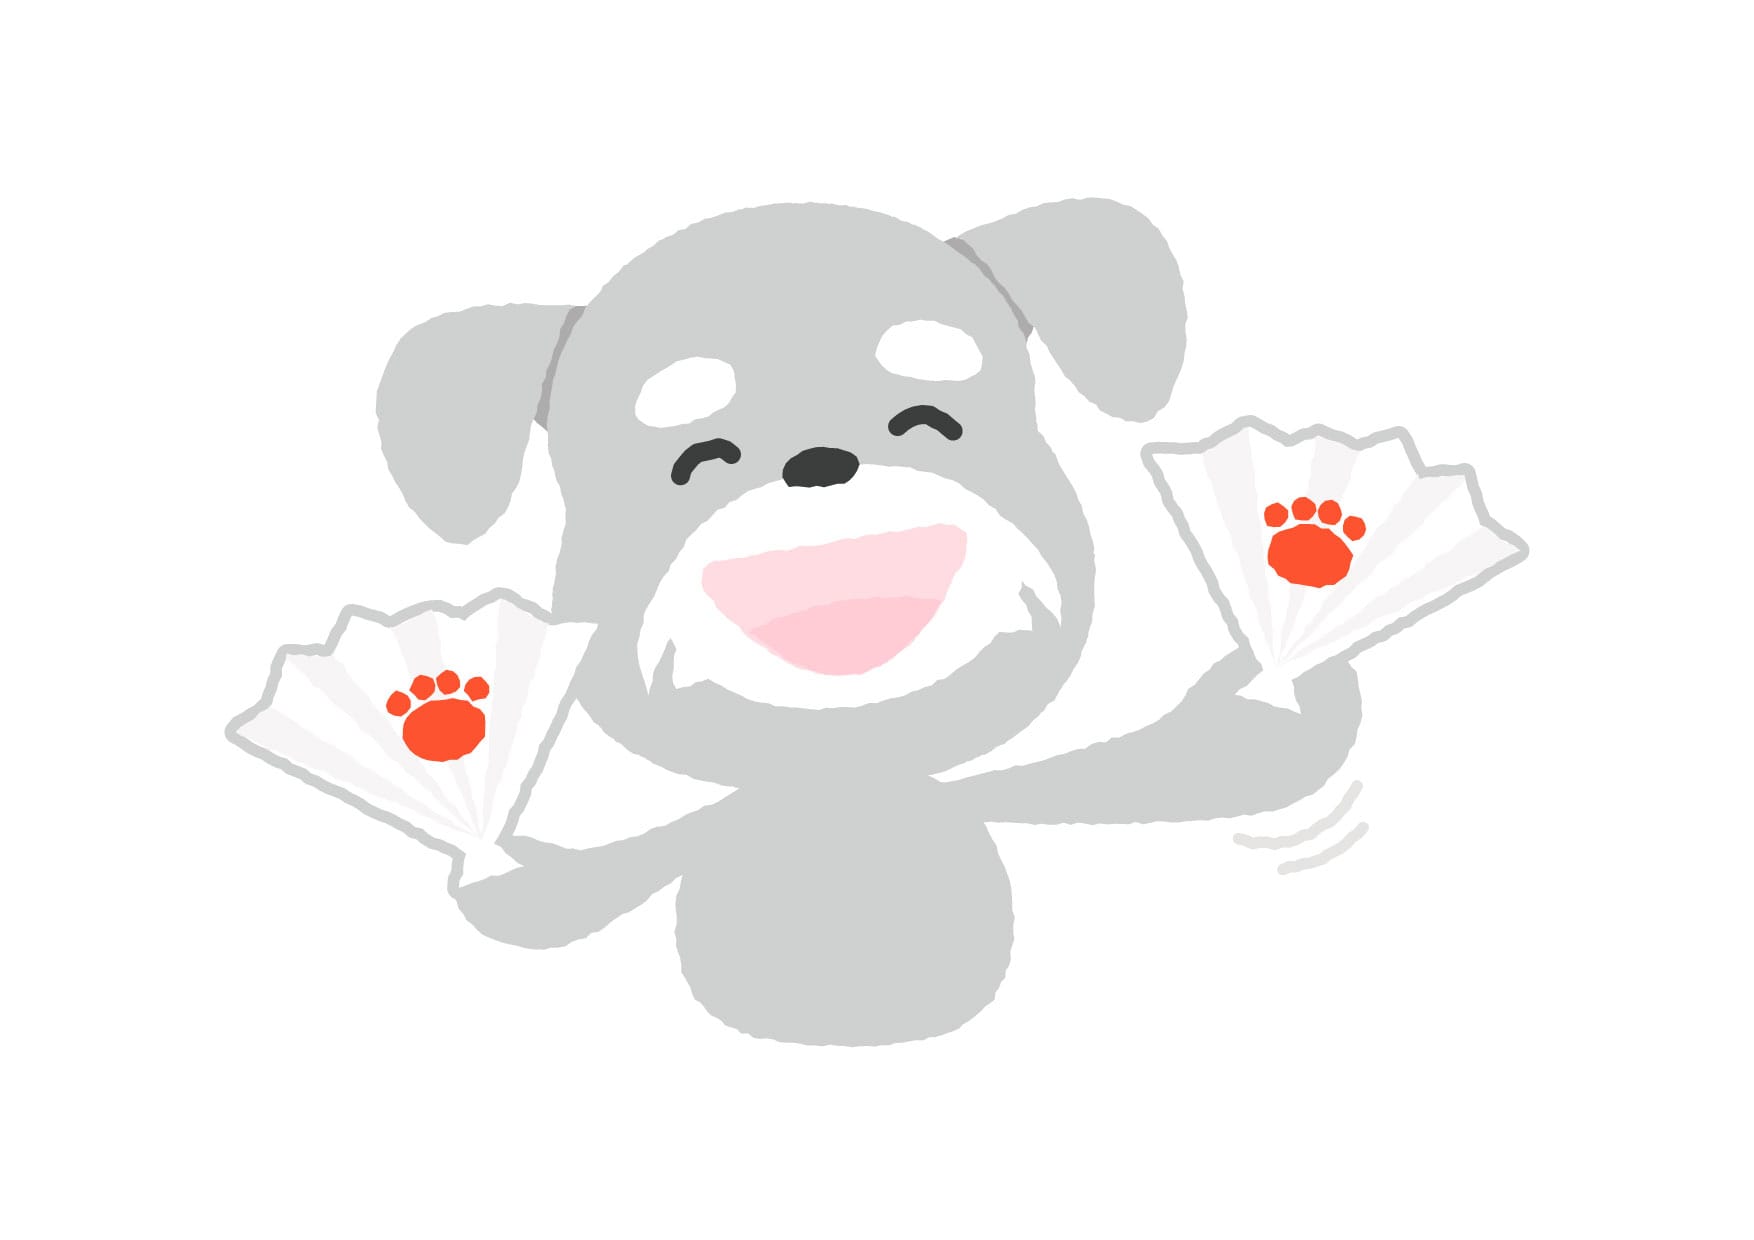 可愛いイラスト無料 犬 応援 Free Illustration Dog Cheering